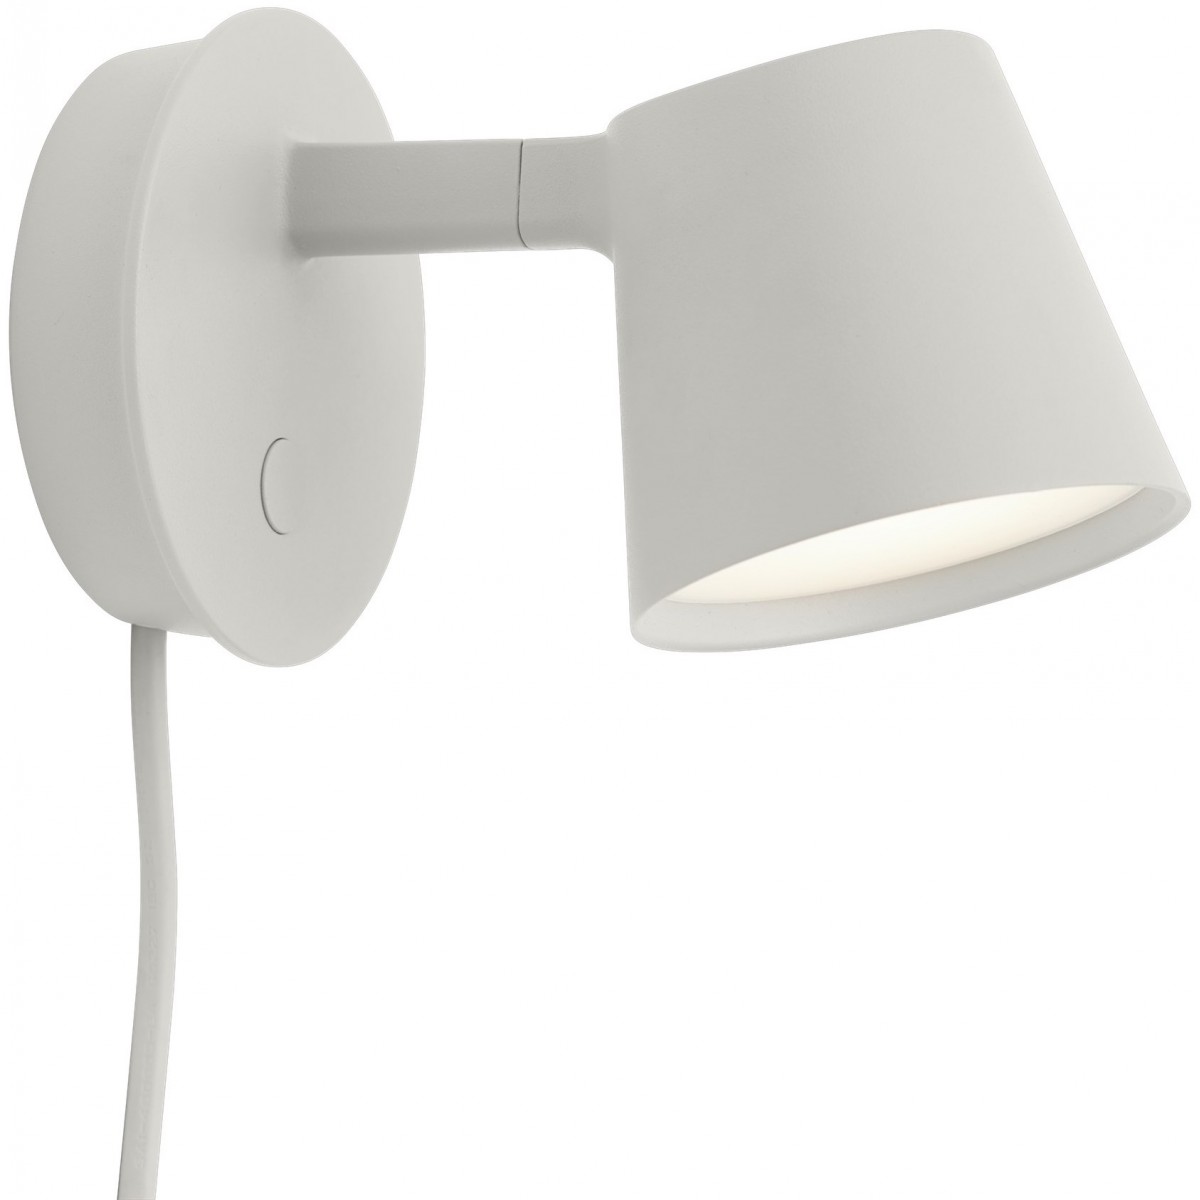 Tip wall lamp – grey